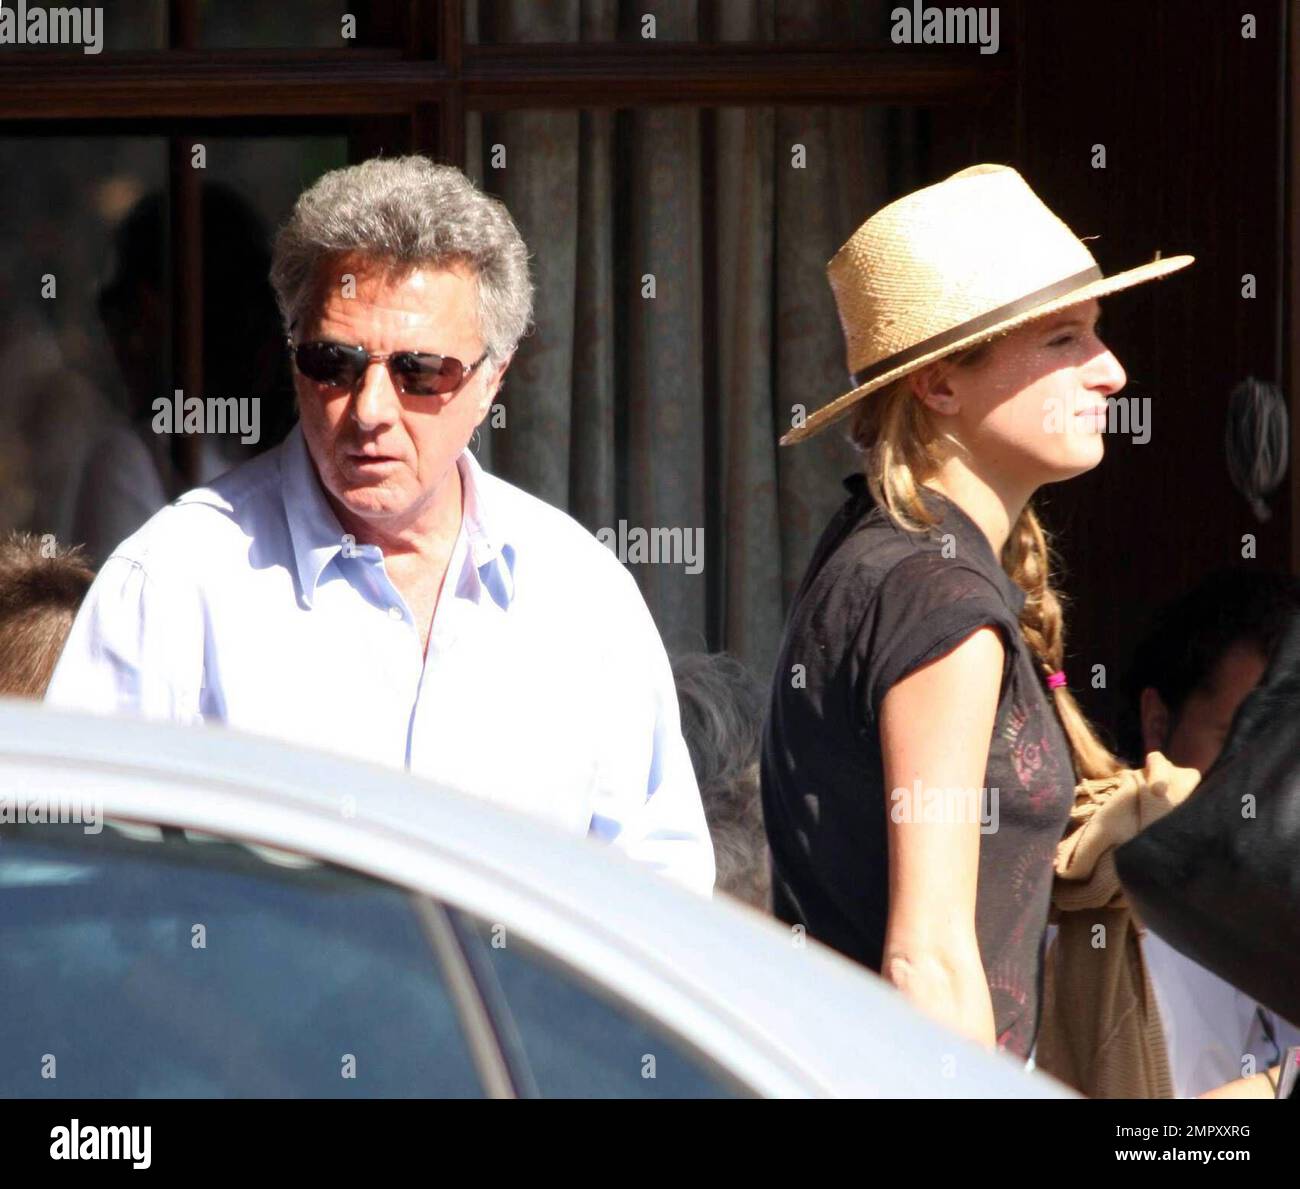 Exclusif !! Dustin Hoffman a été vu en lunching avec la famille cet après-midi à il Pastaio Ristorante à Beverly Hills. L'acteur s'est assis sur le patio du restaurant et a apprécié le soleil du sud de la Californie. Los Angeles, Californie. 3/25/08. Banque D'Images